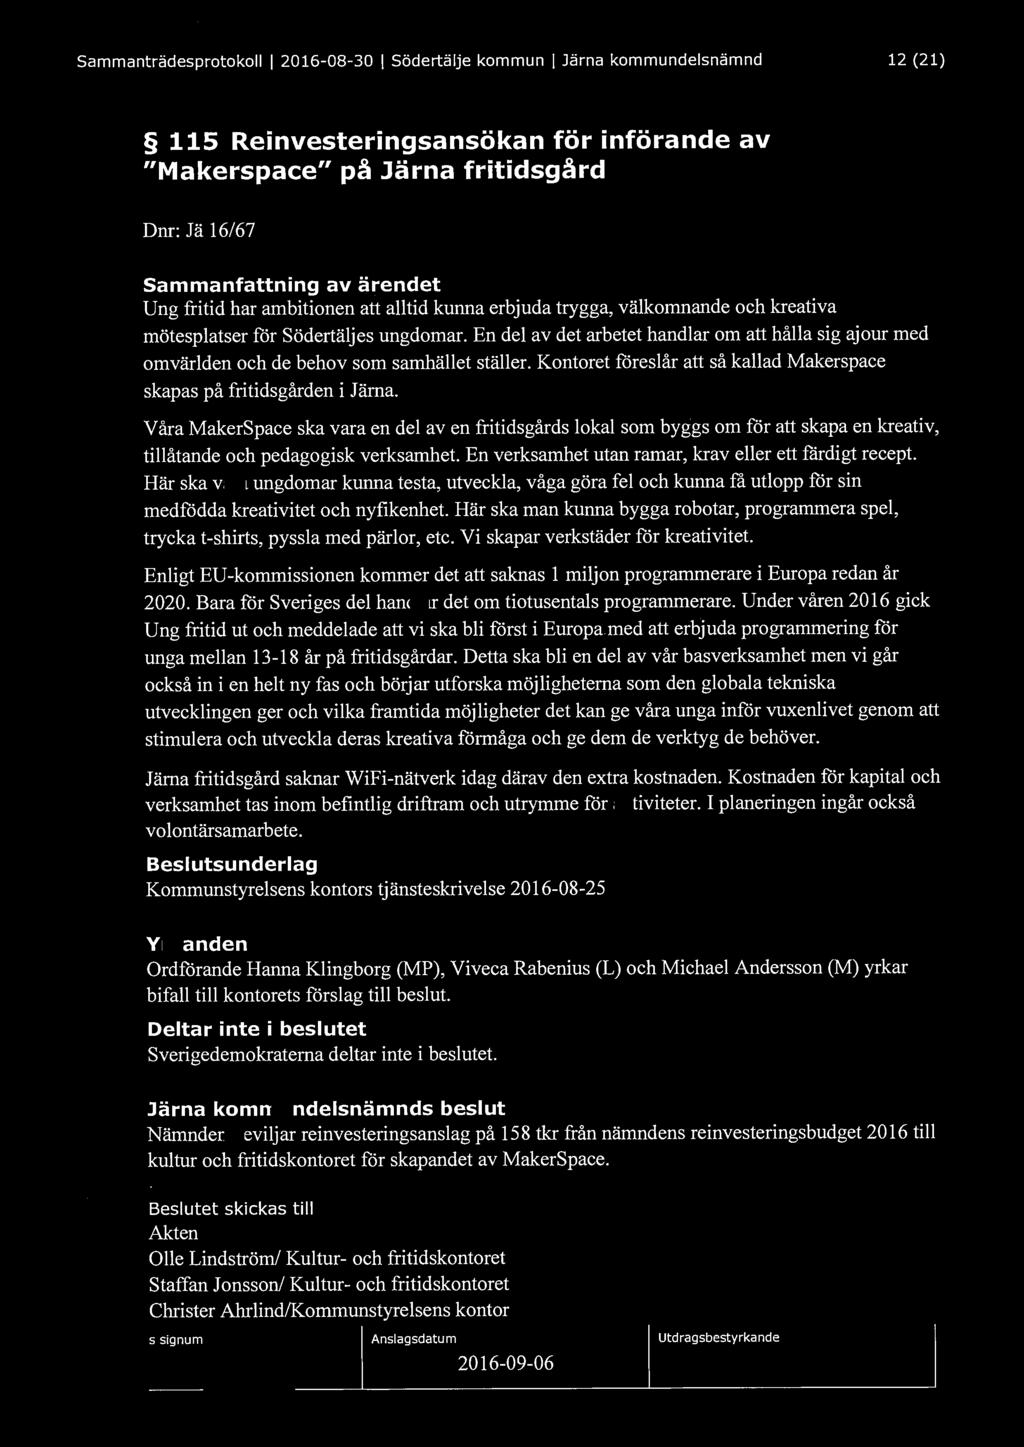 Sammanträdesprotokoll l 2016-08-30 l Södertälje kommun l Järna kommundelsnämnd 12 (21) 115 Reinvesteringsansökan för införande av "Makerspace" på Järna fritidsgård Dnr: Jä 16/67 Sammanfattning av